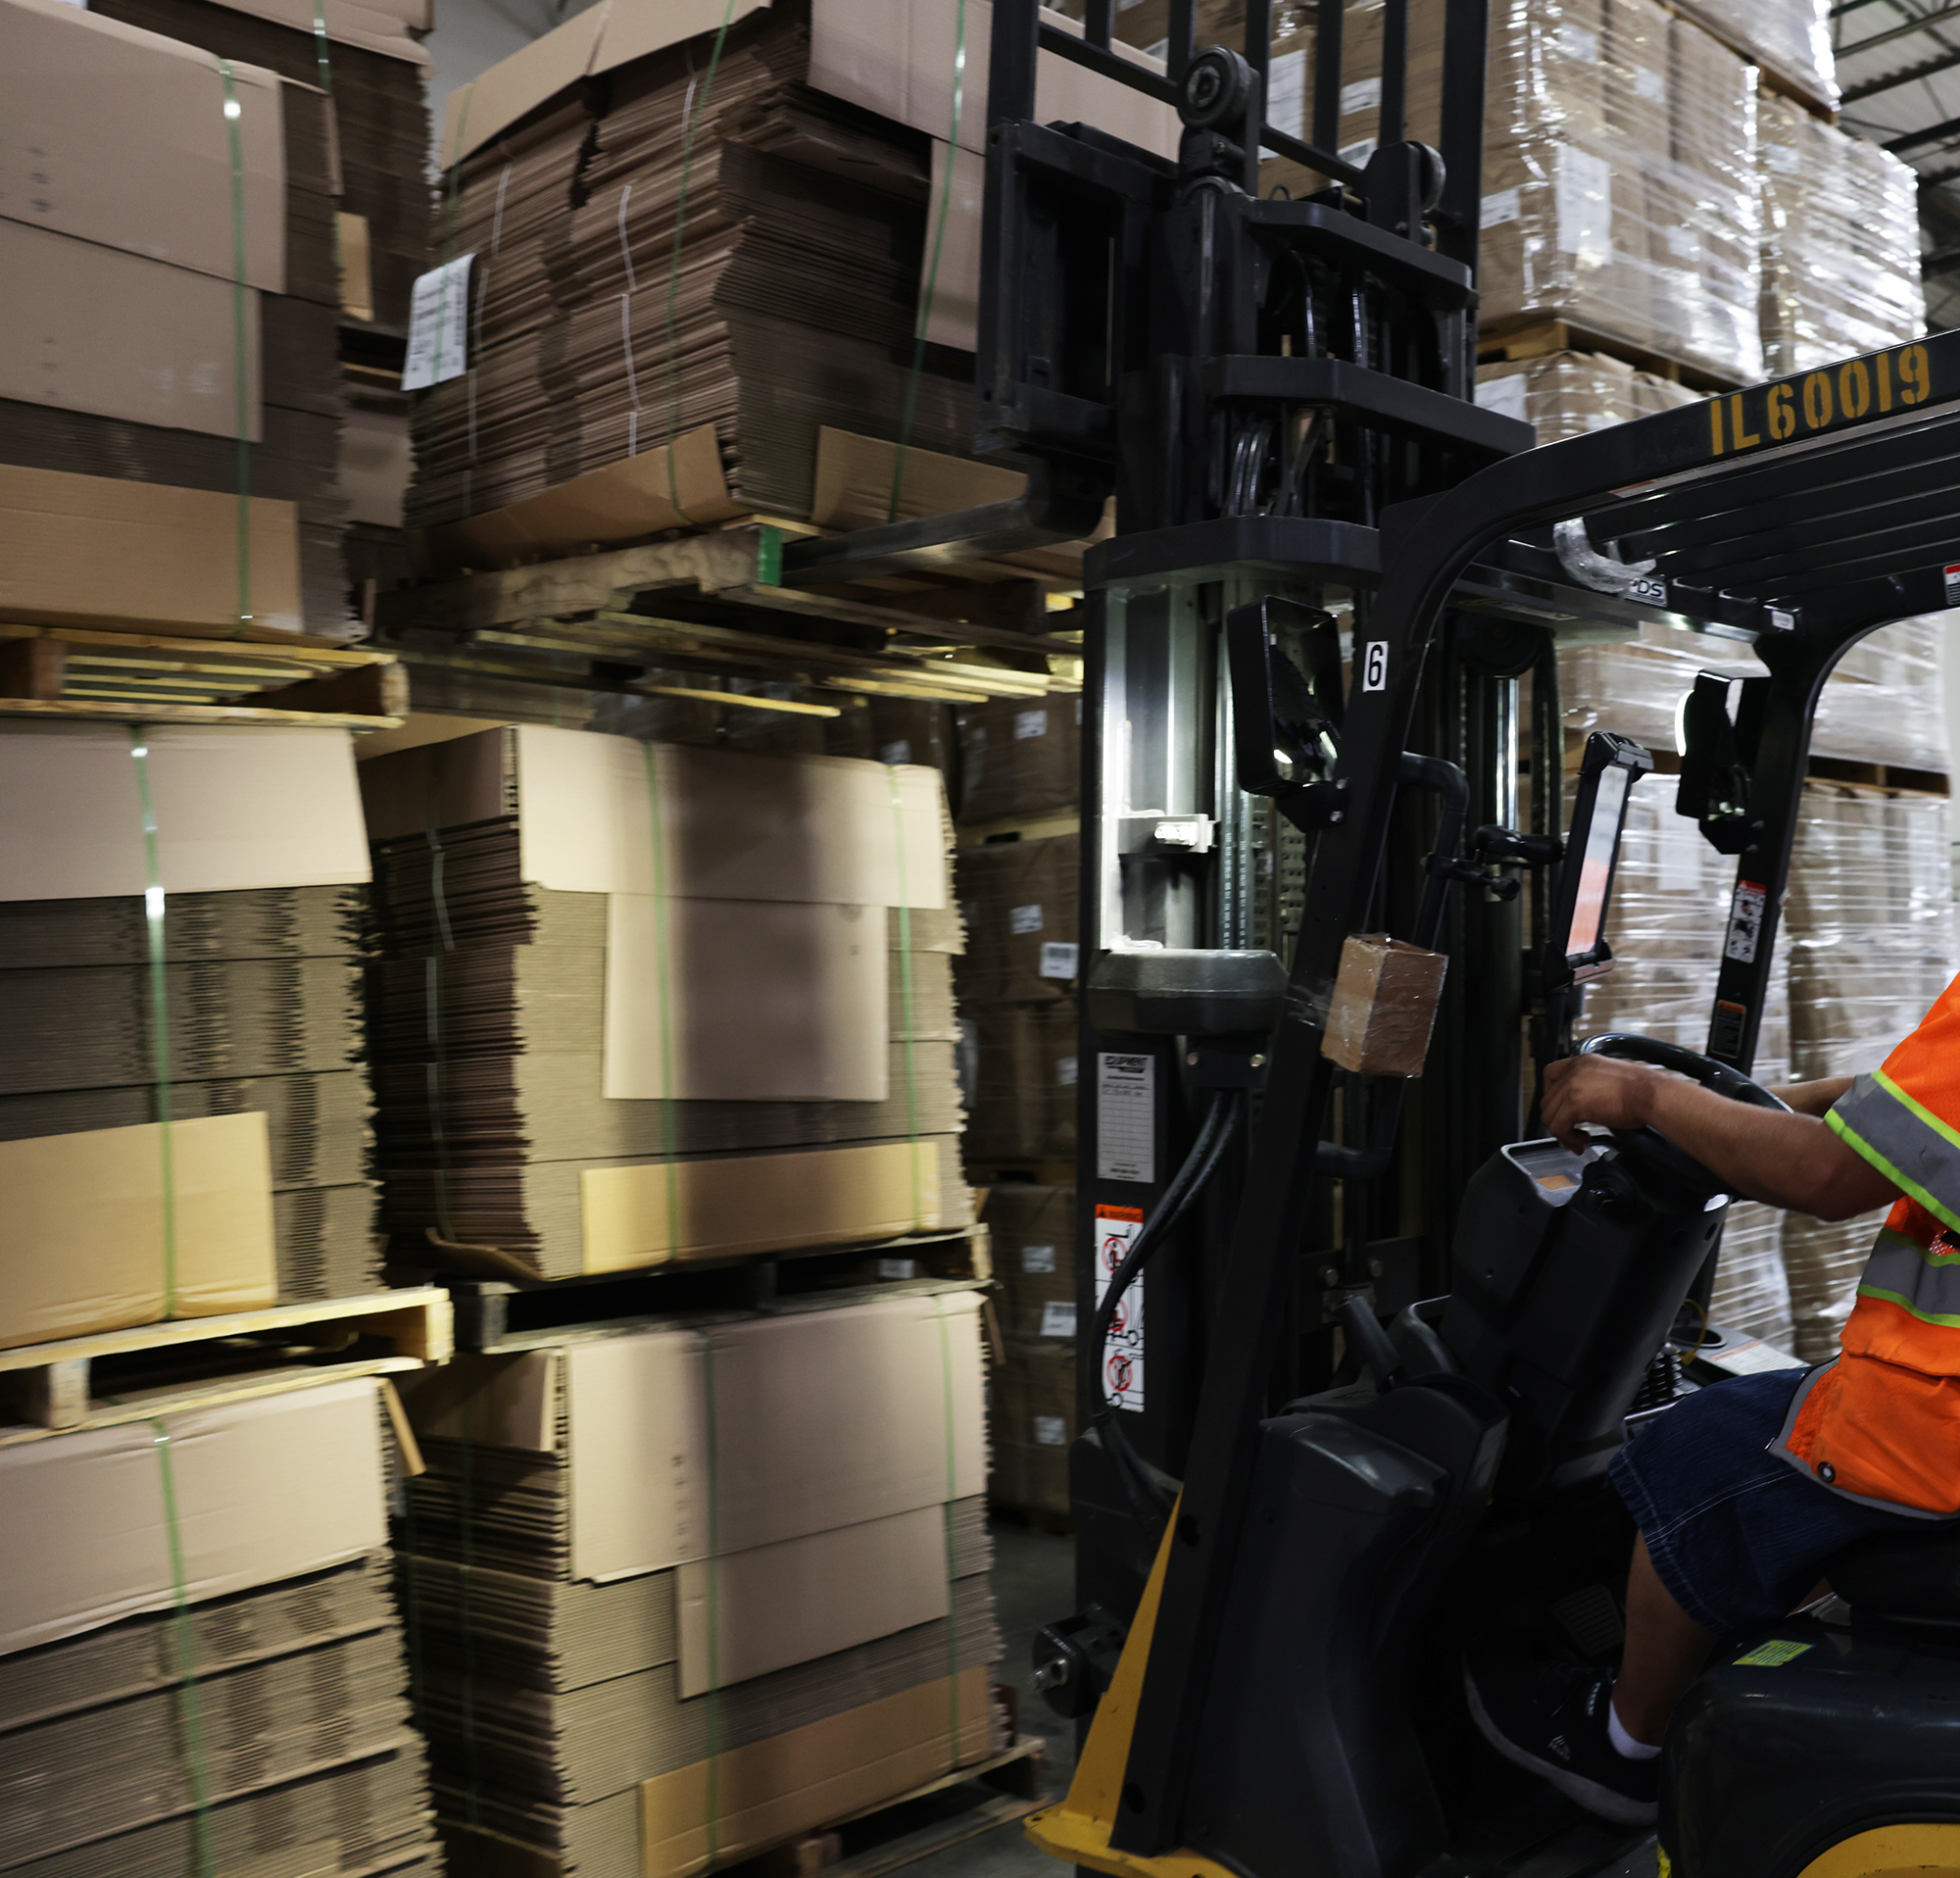 Forklift moving corrugated boxes inside distribution center